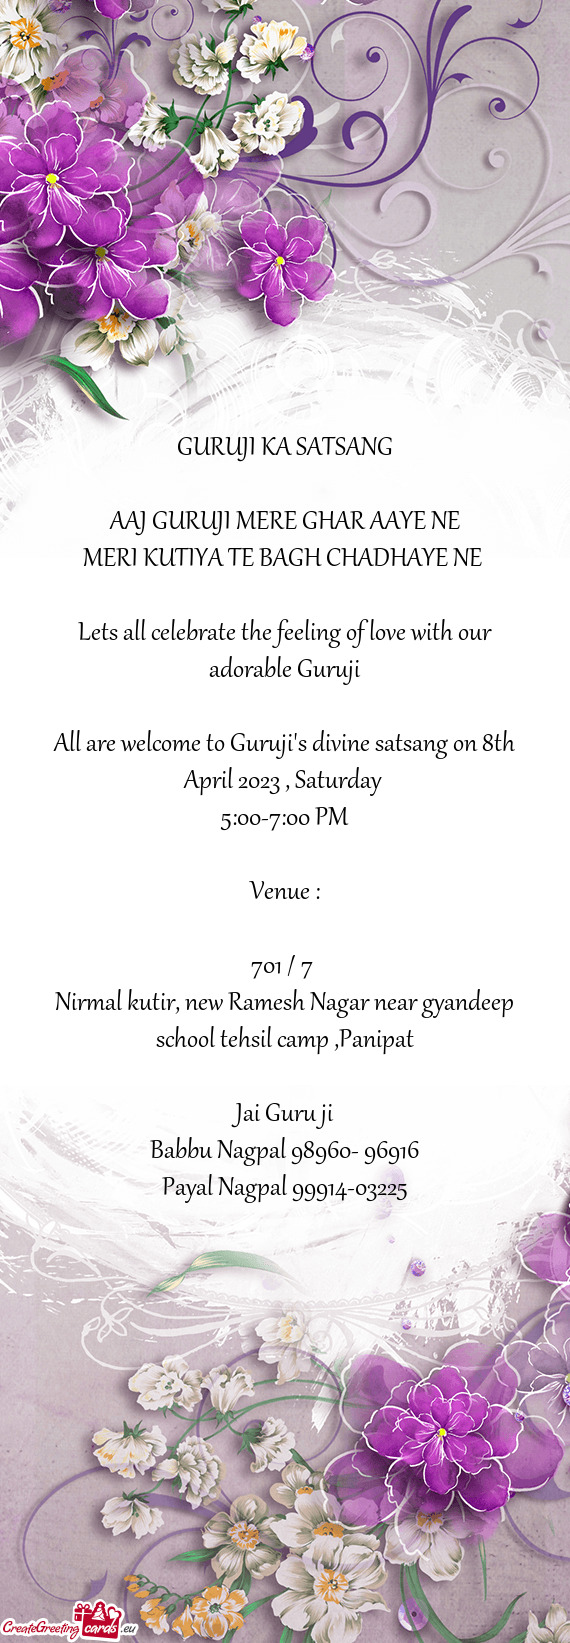 All are welcome to Guruji